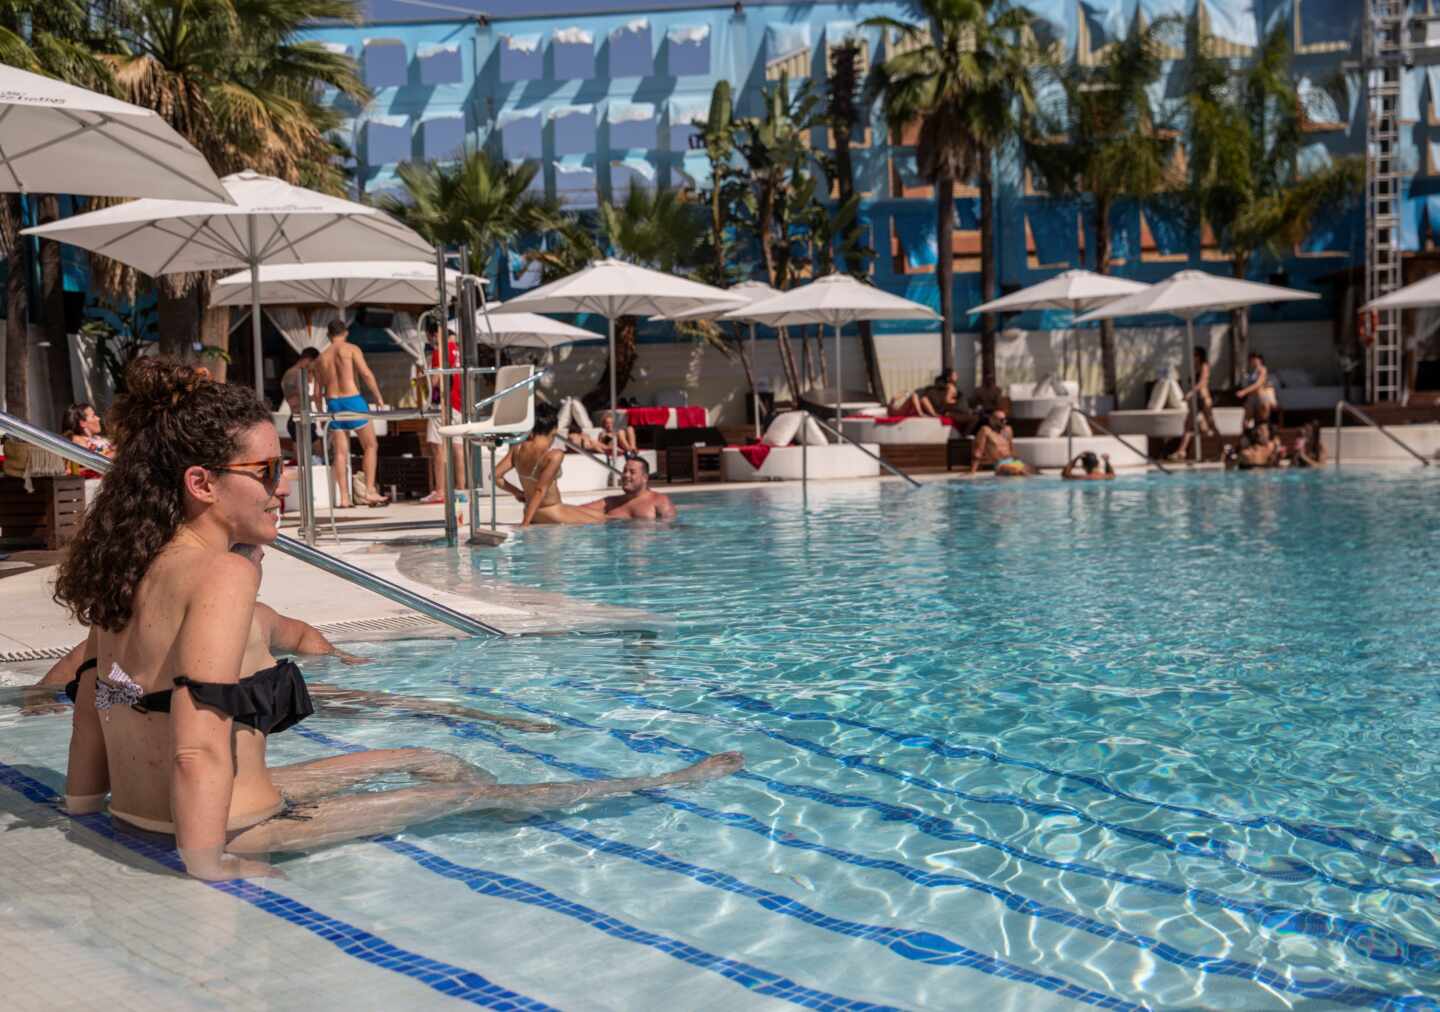 Instituto Coordenadas ve "una alarma innecesaria" en las restricciones al aforo de piscinas comunitarias